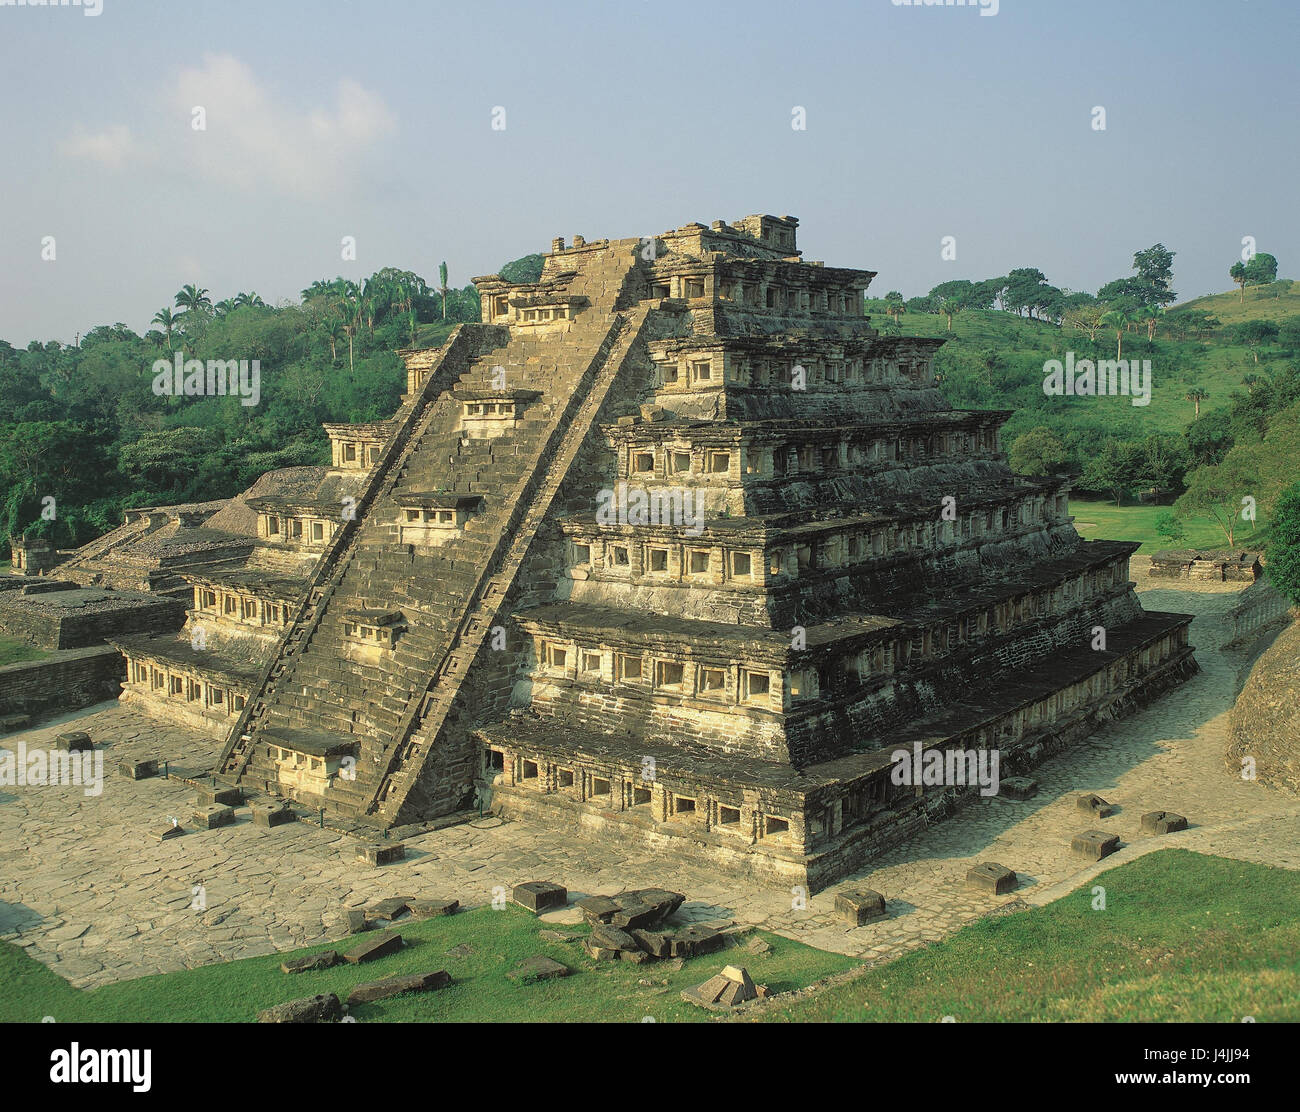 Le Mexique, l'Etat de Veracruz, El Tajin, pyramide des niches Amérique Centrale, pyramide, 7 étages, hauteur 25 m, la structure, l'endroit d'intérêt, architecture, culture, ruine la ville, 600 - en 1200 A.D., Totonakenkultur, patrimoine culturel mondial de l'UNESCO Banque D'Images